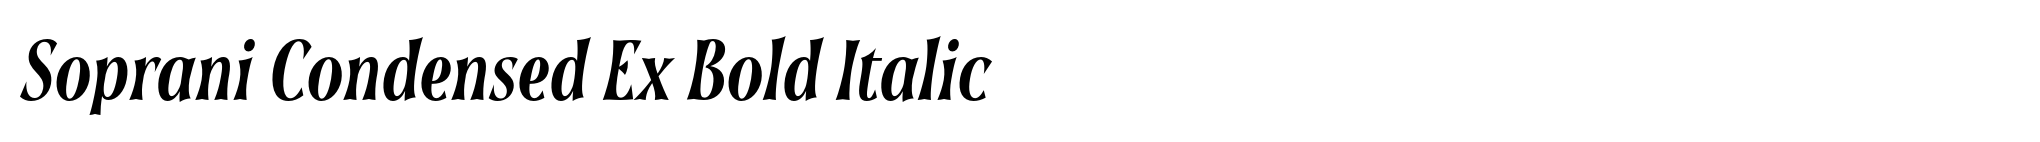 Soprani Condensed Ex Bold Italic image